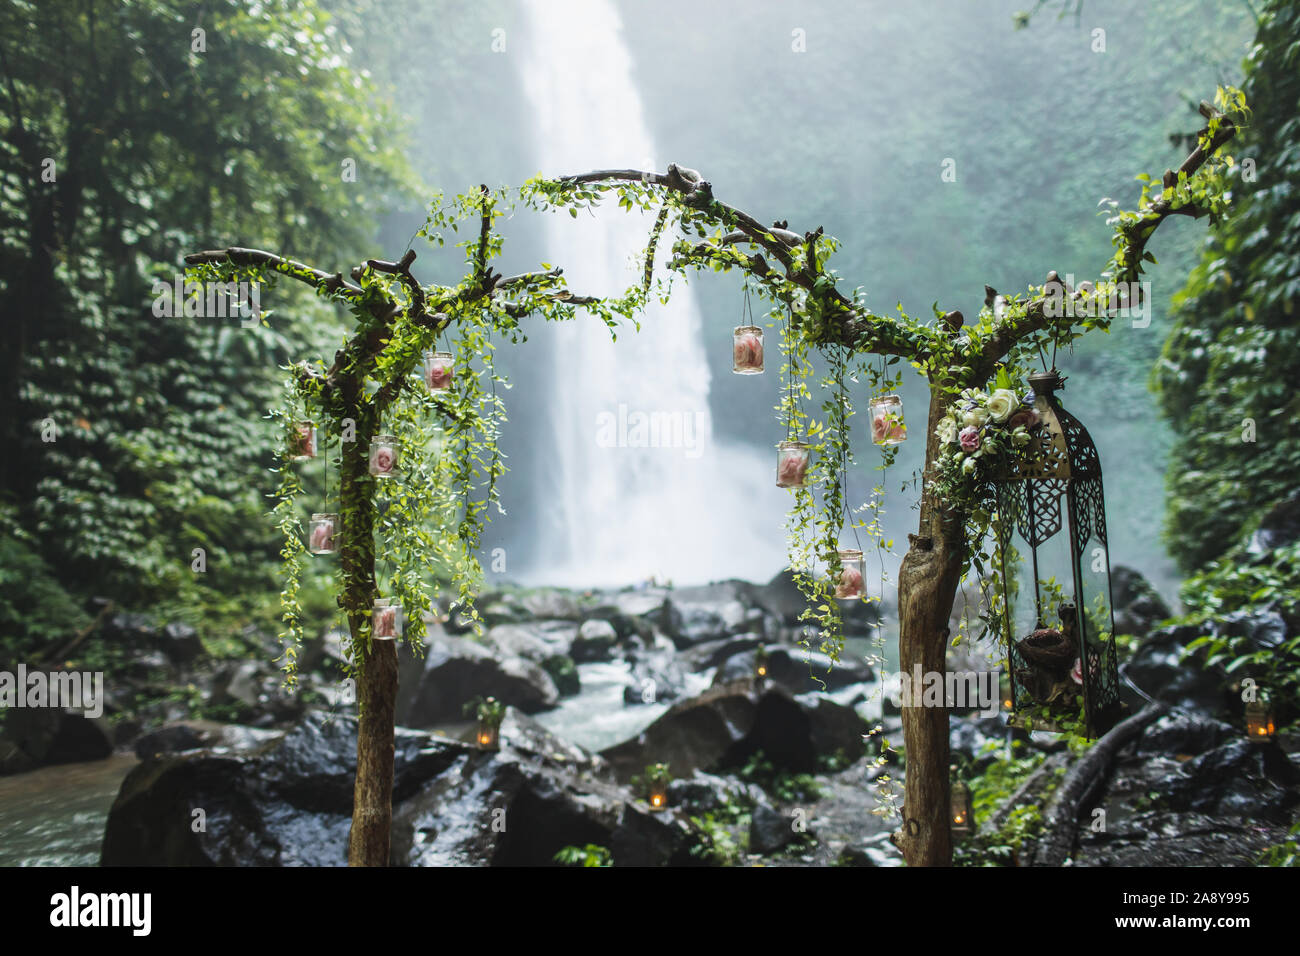 Insolita cerimonia di nozze arch con cascata vista nella giungla foresta pluviale. Sogno di cerimonia nuziale di Bali. Foto Stock